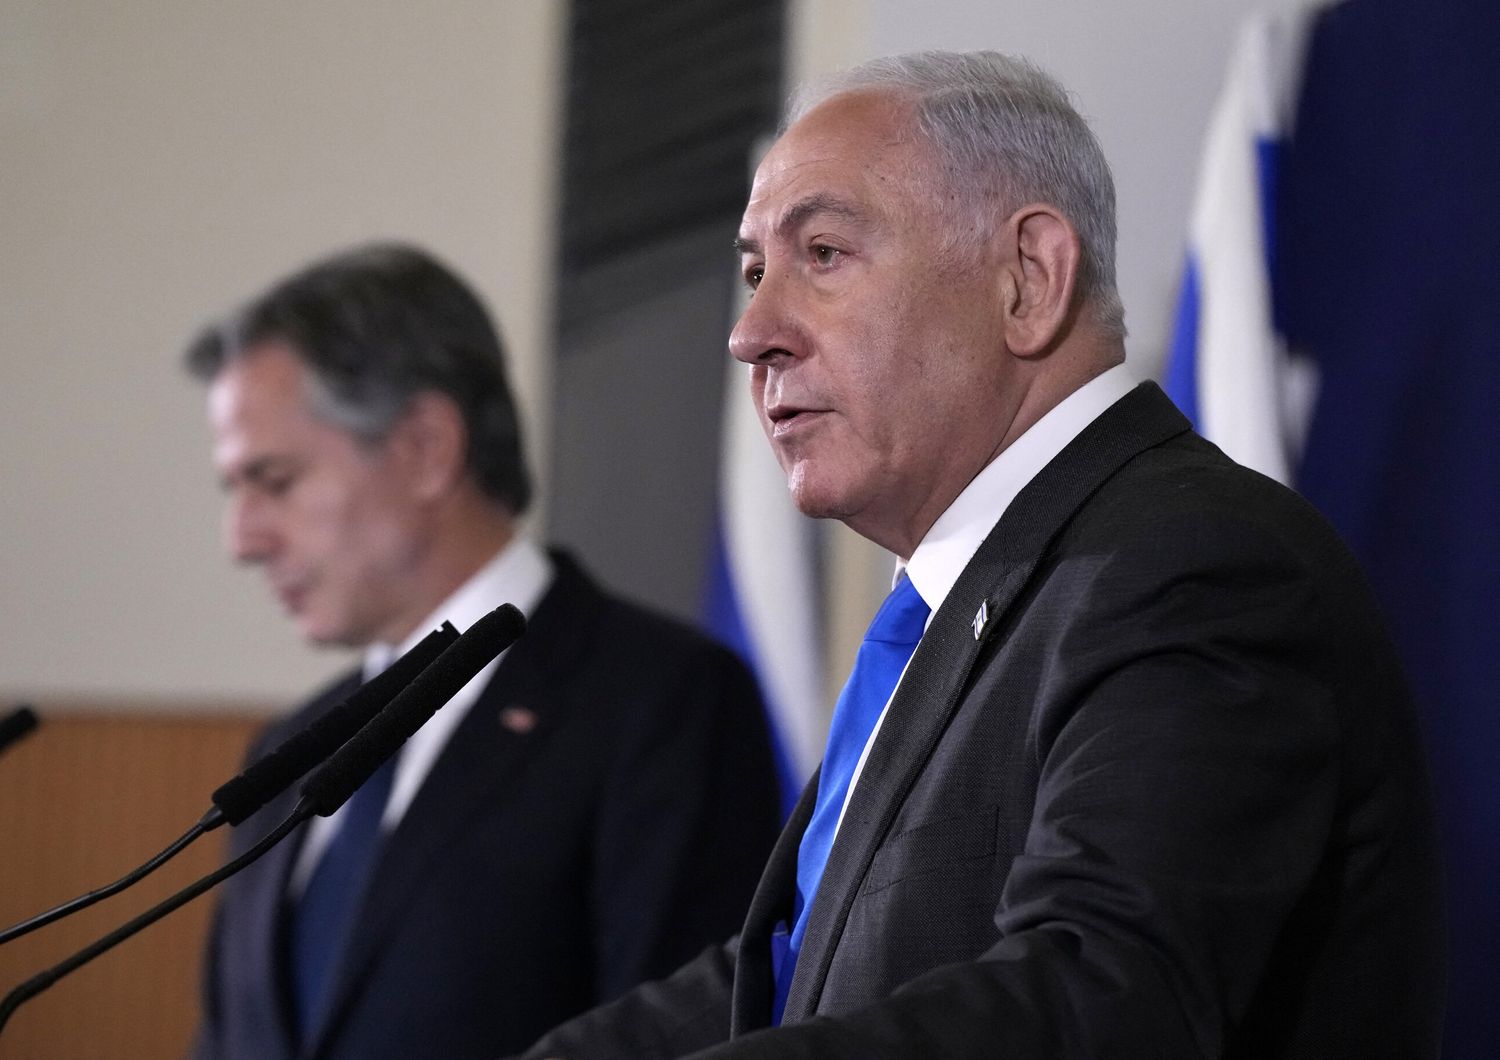 Il primo ministro israeliano Benjamin Netanyahu e il segretario di Stato Usa Antony Blinken&nbsp;